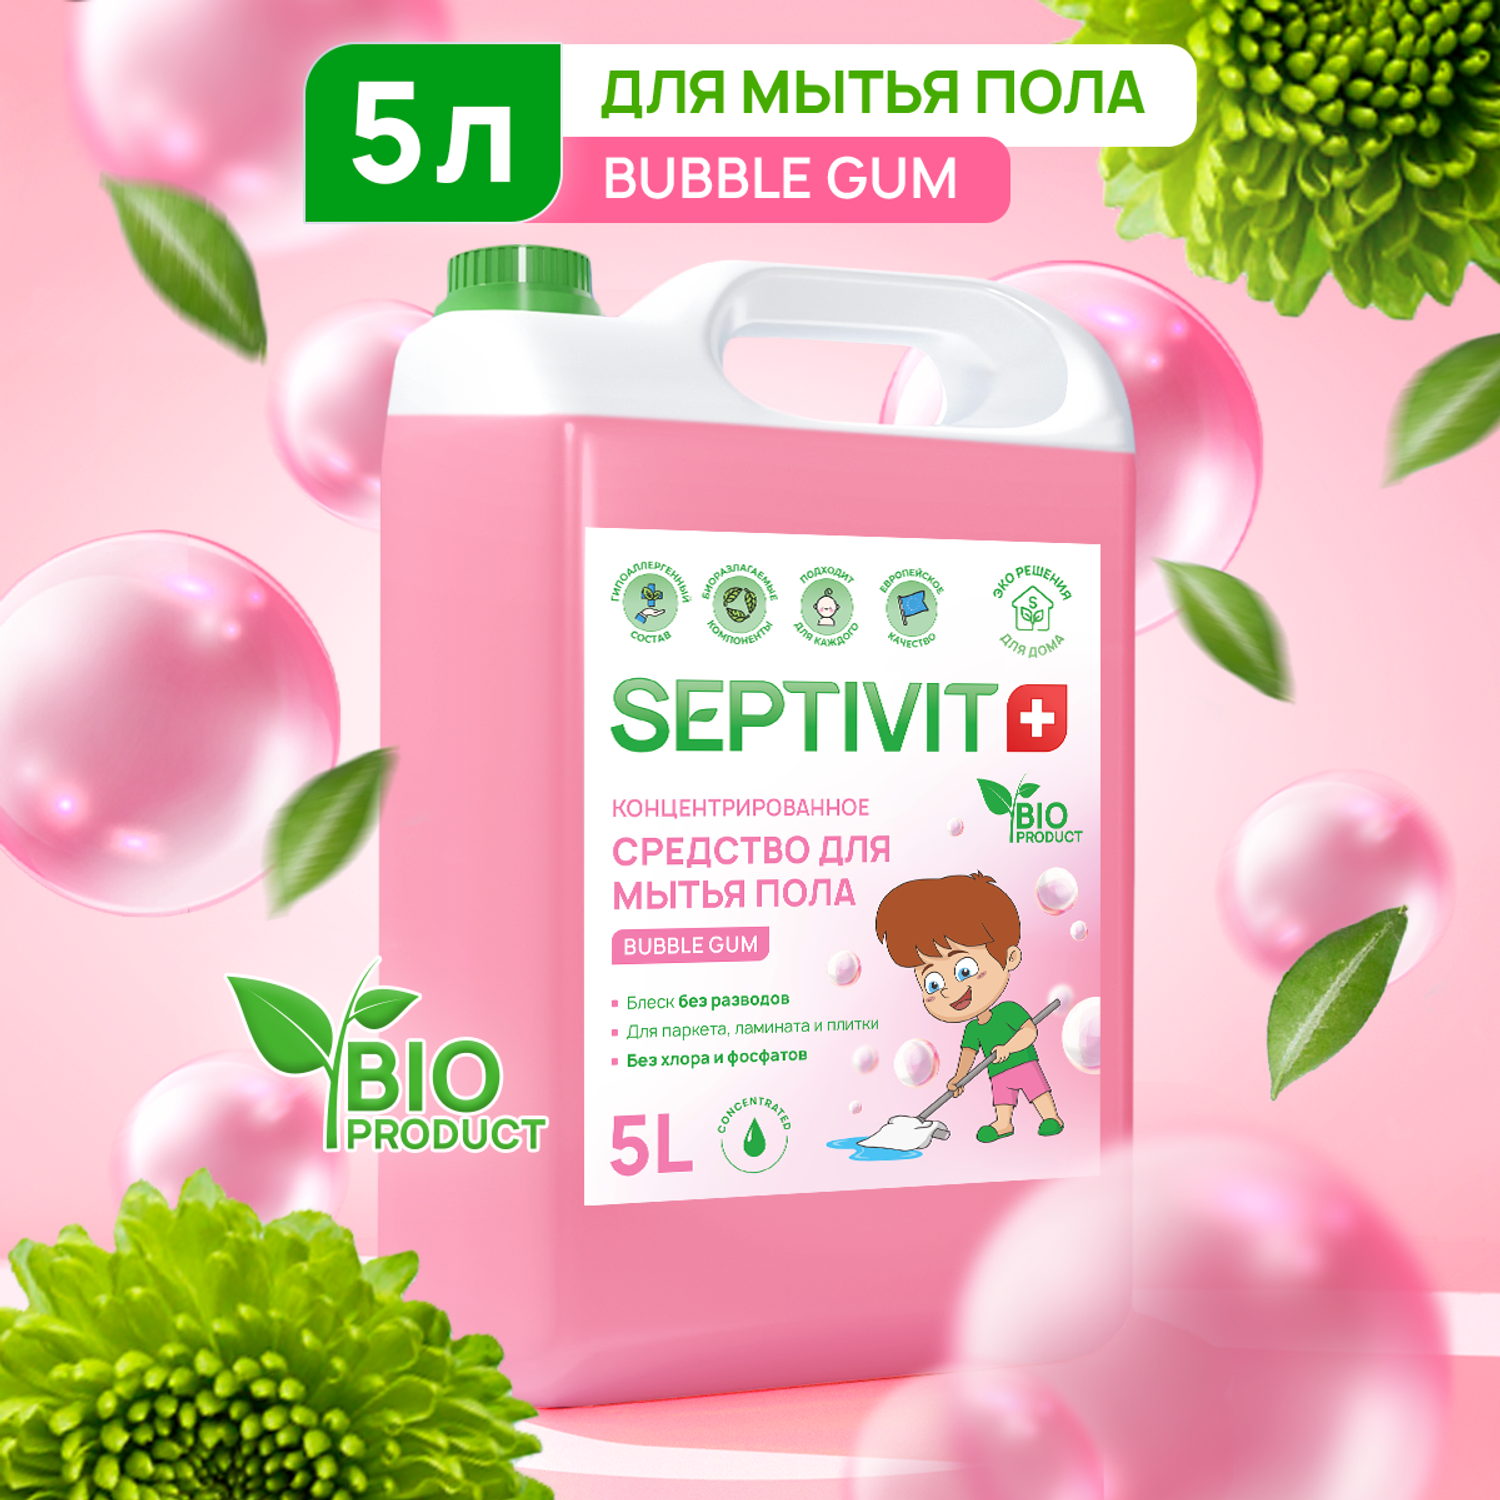 Средство для мытья пола SEPTIVIT Premium Bubble Gum 5л - фото 1